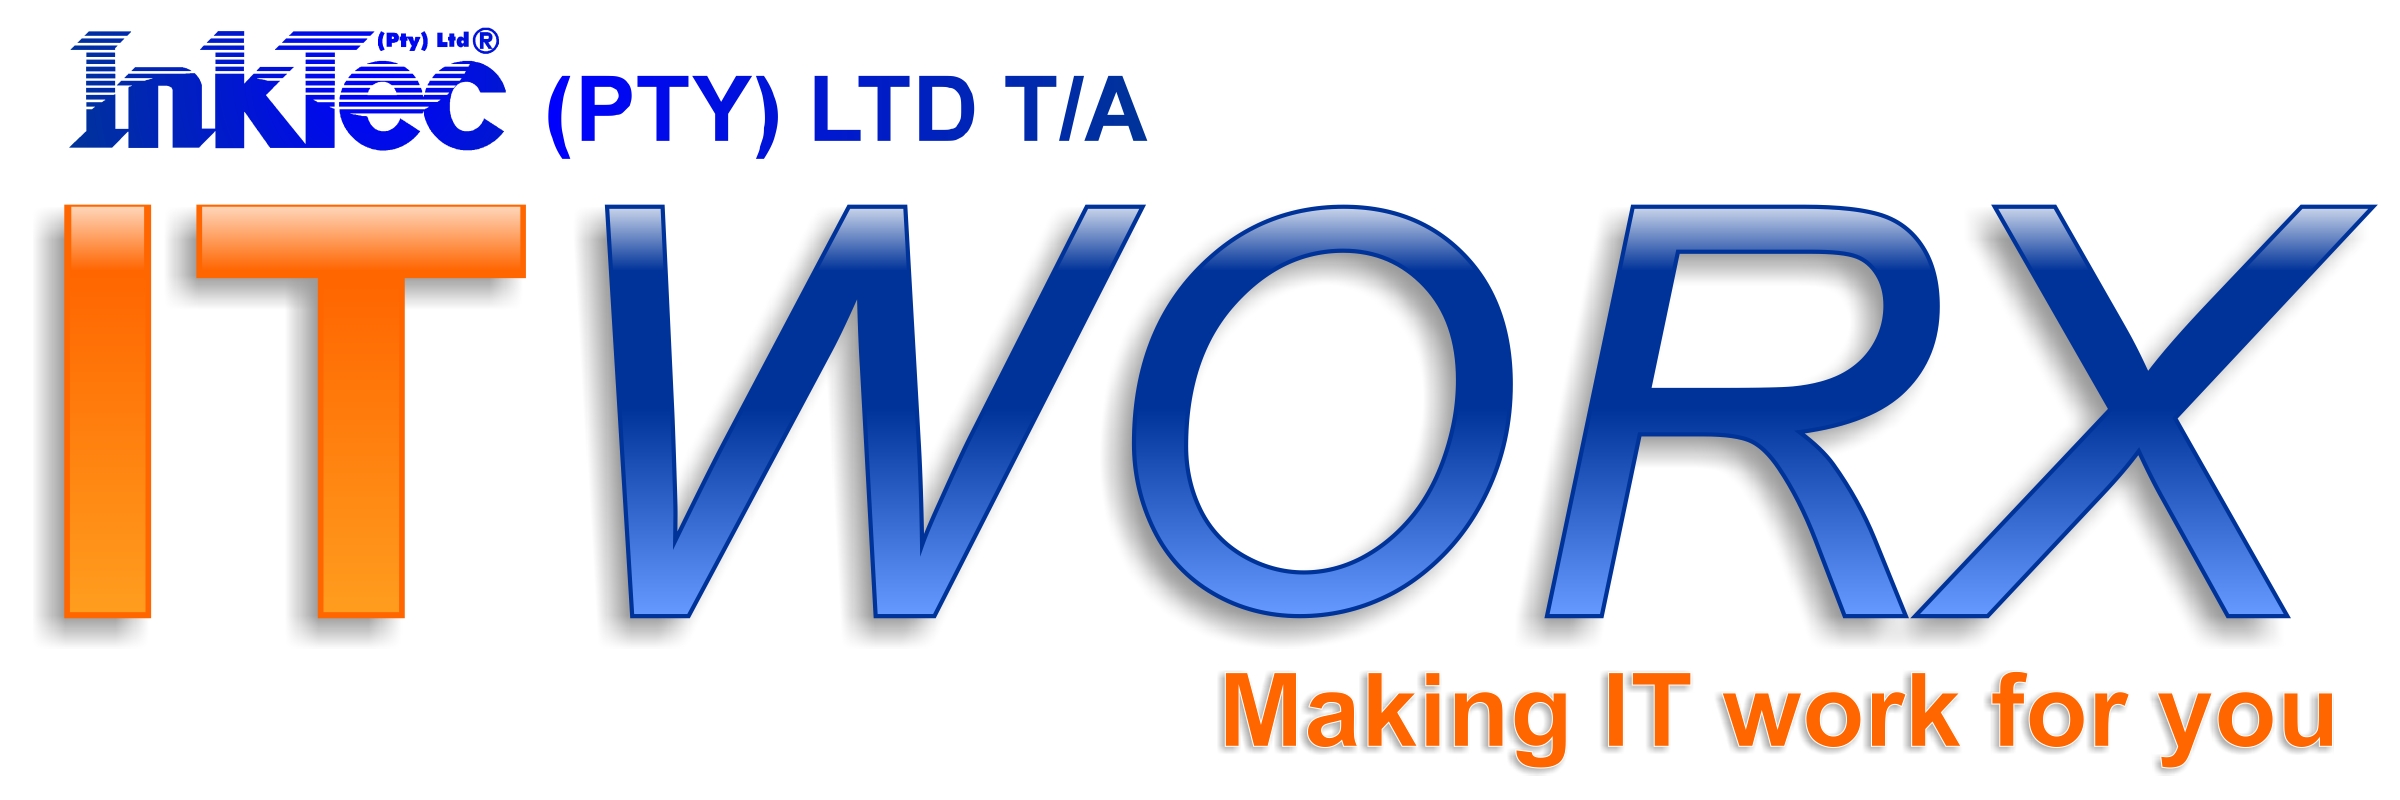 Inktec (Pty) Ltd t/a ITWORX logo